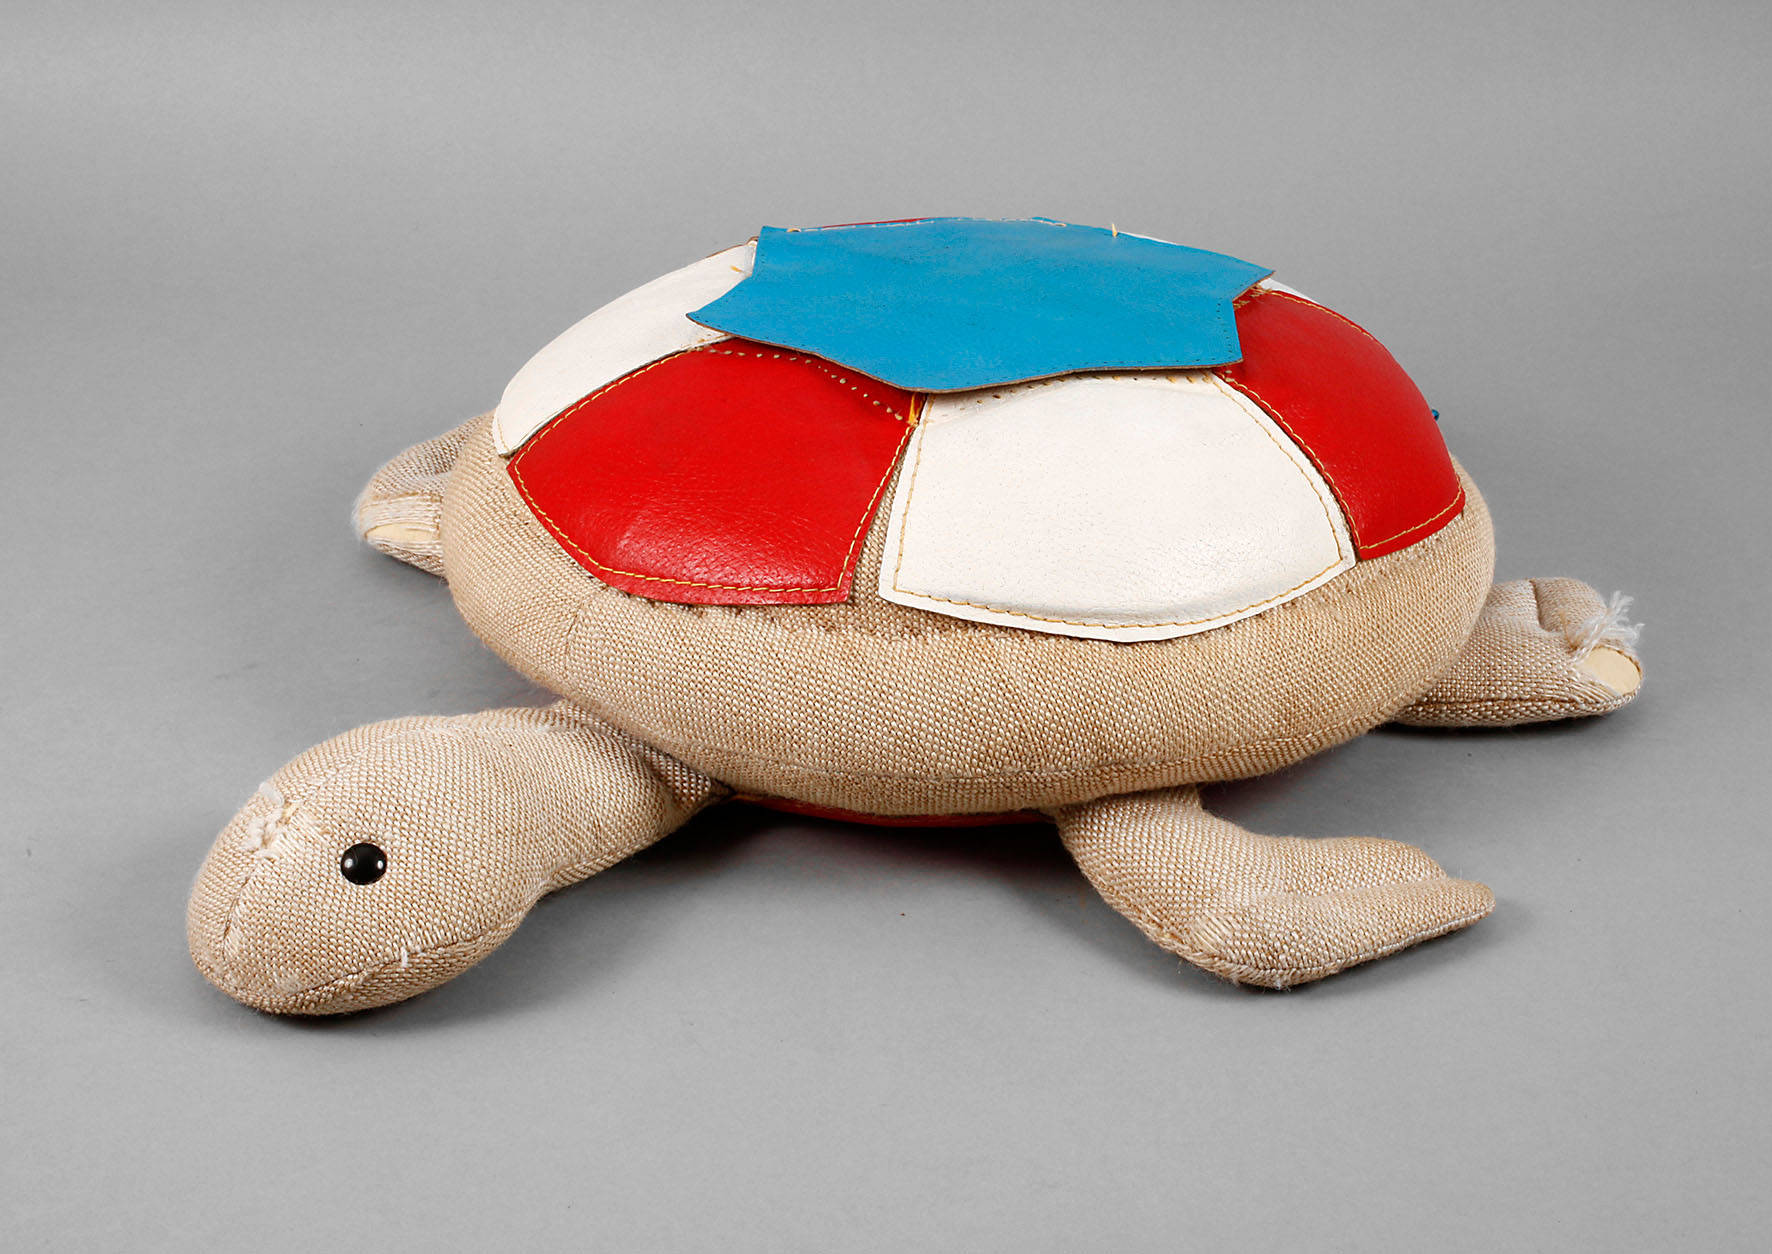 Spielzeug-Schildkröte Renate Mueller